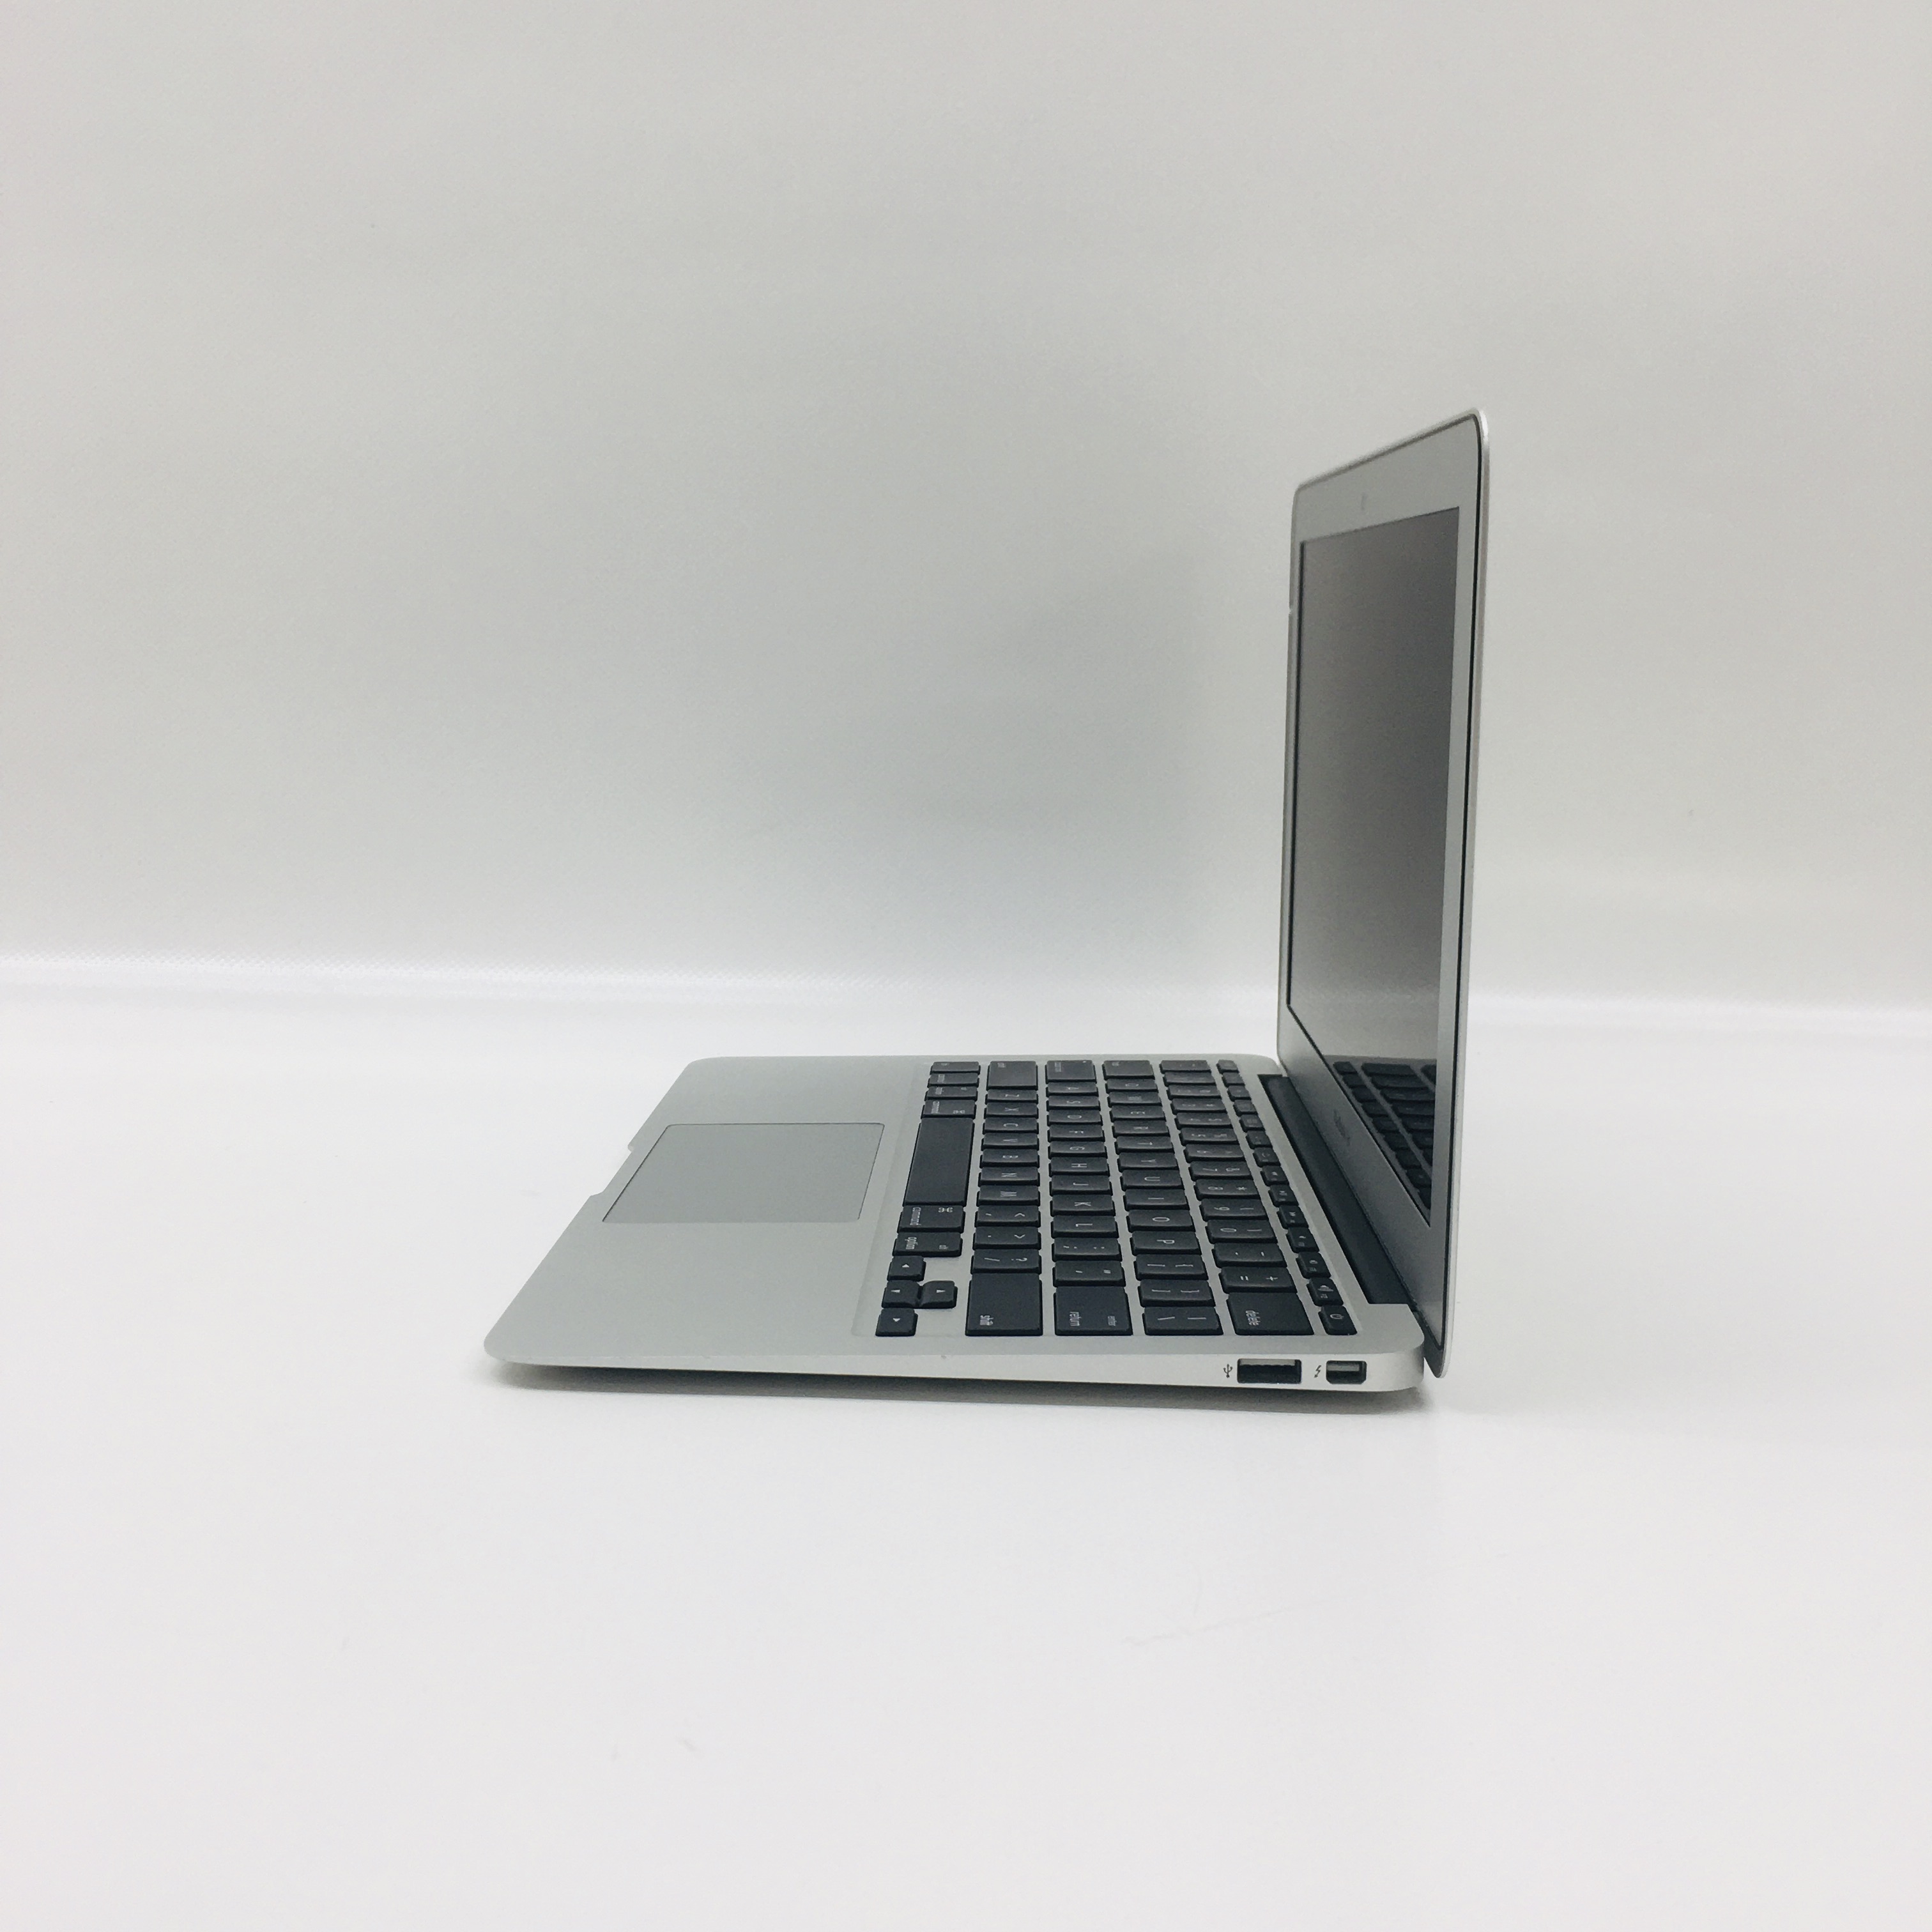 MacBook Air 11" Mid 2012 (Intel Core i5 1.7 GHz 4 GB RAM 128 GB SSD), Intel Core i5 1.7 GHz, 4 GB RAM, 128 GB SSD, image 3